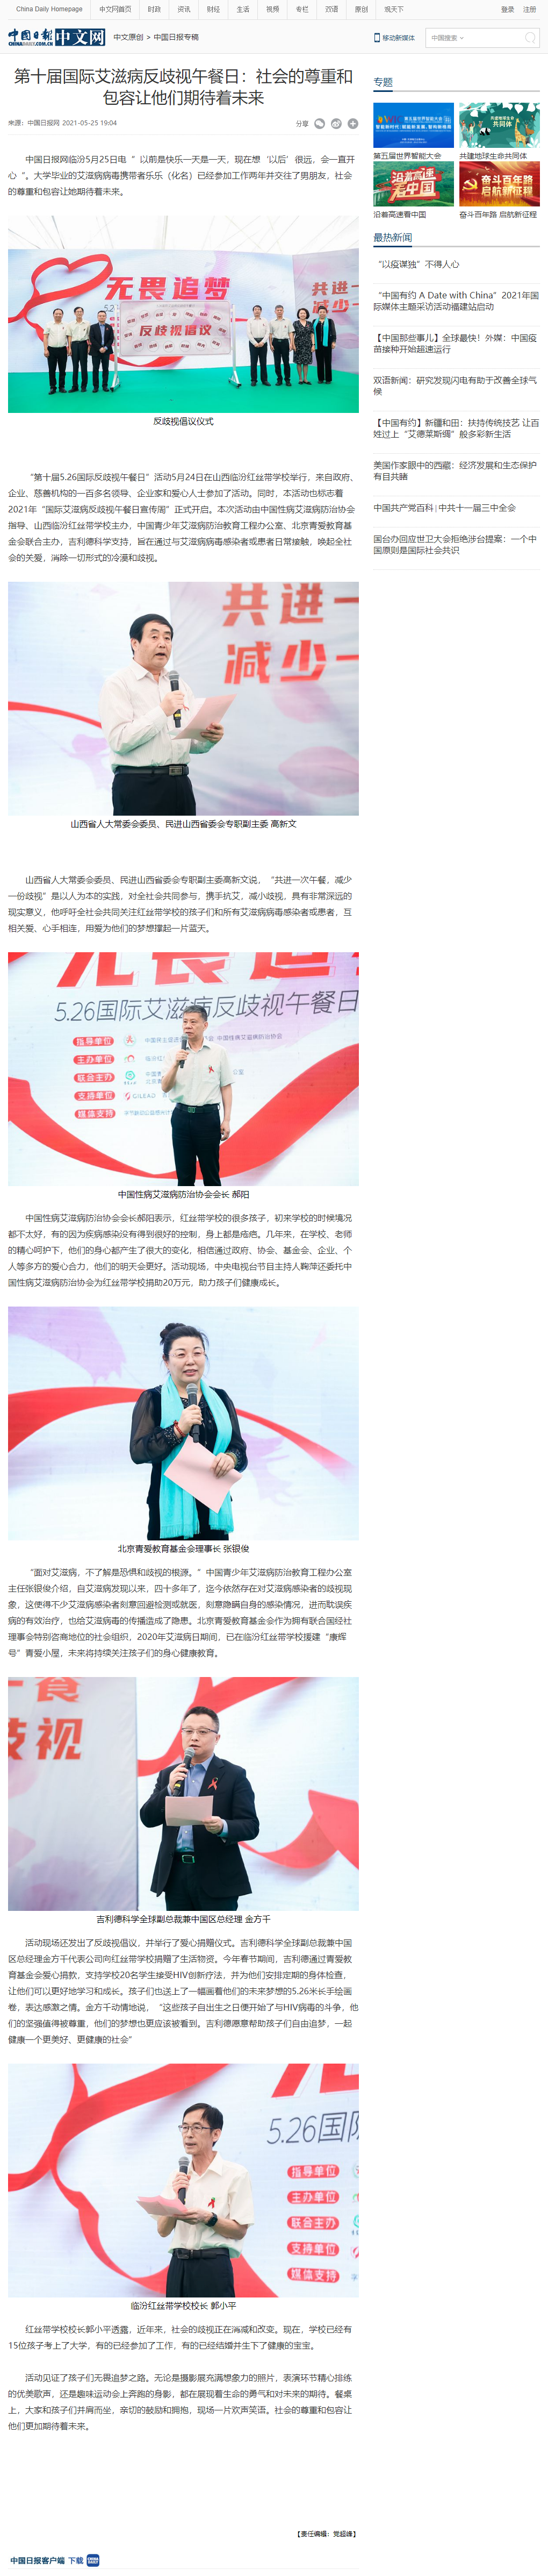 第十届国际艾滋病反歧视午餐日：社会的尊重和包容让他们期待着未来 - 中国日报网